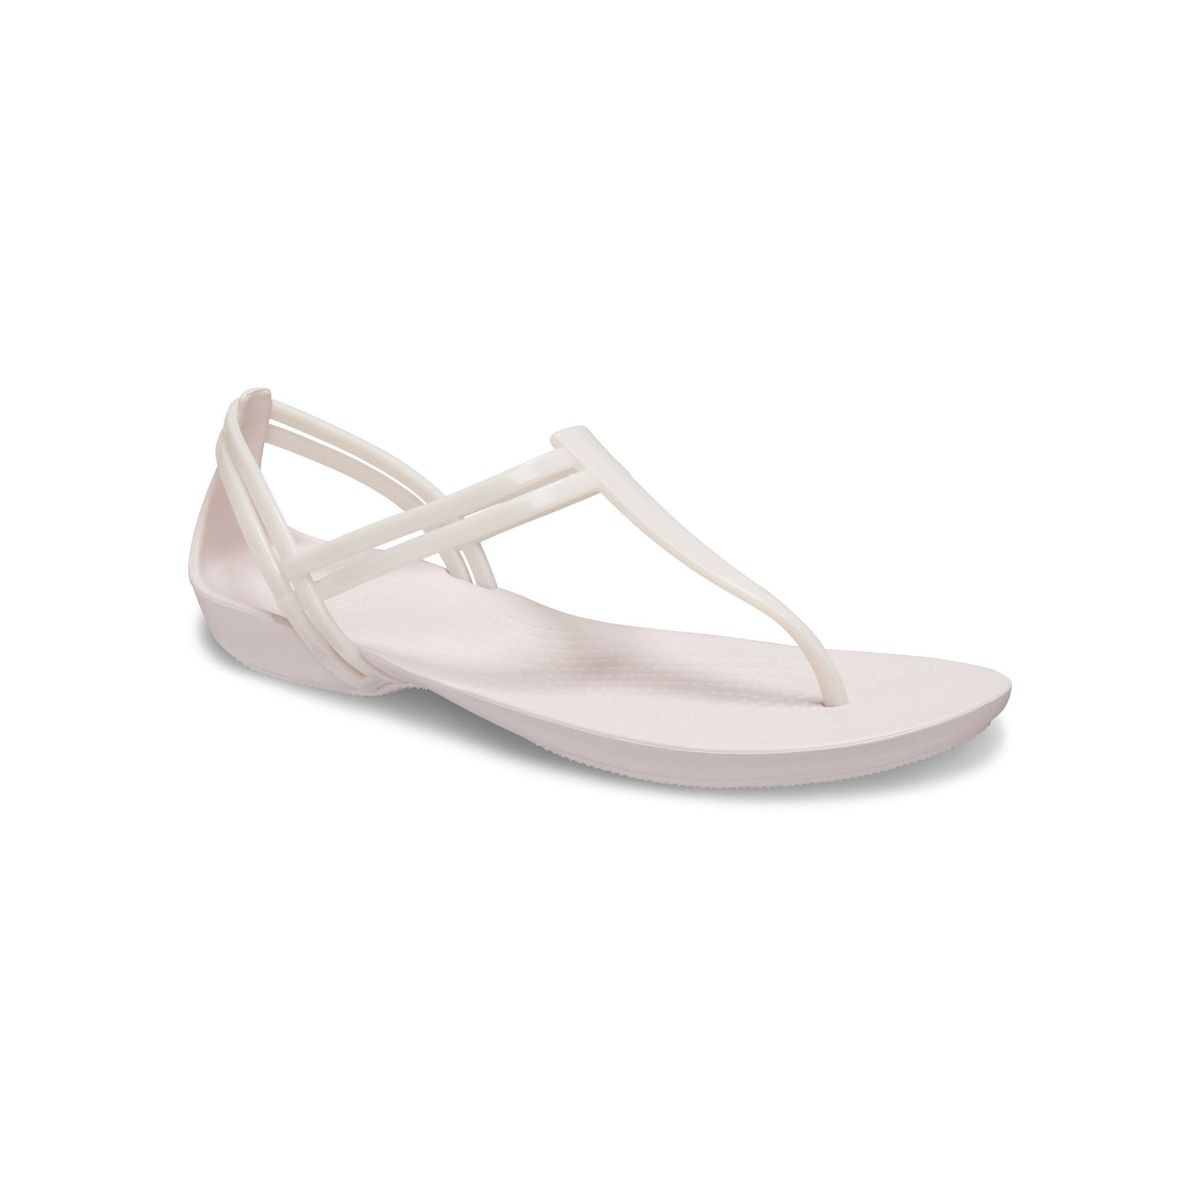 Crocs Isabella Kids Sandals | Shoes For Girls Online – Manning Shoes